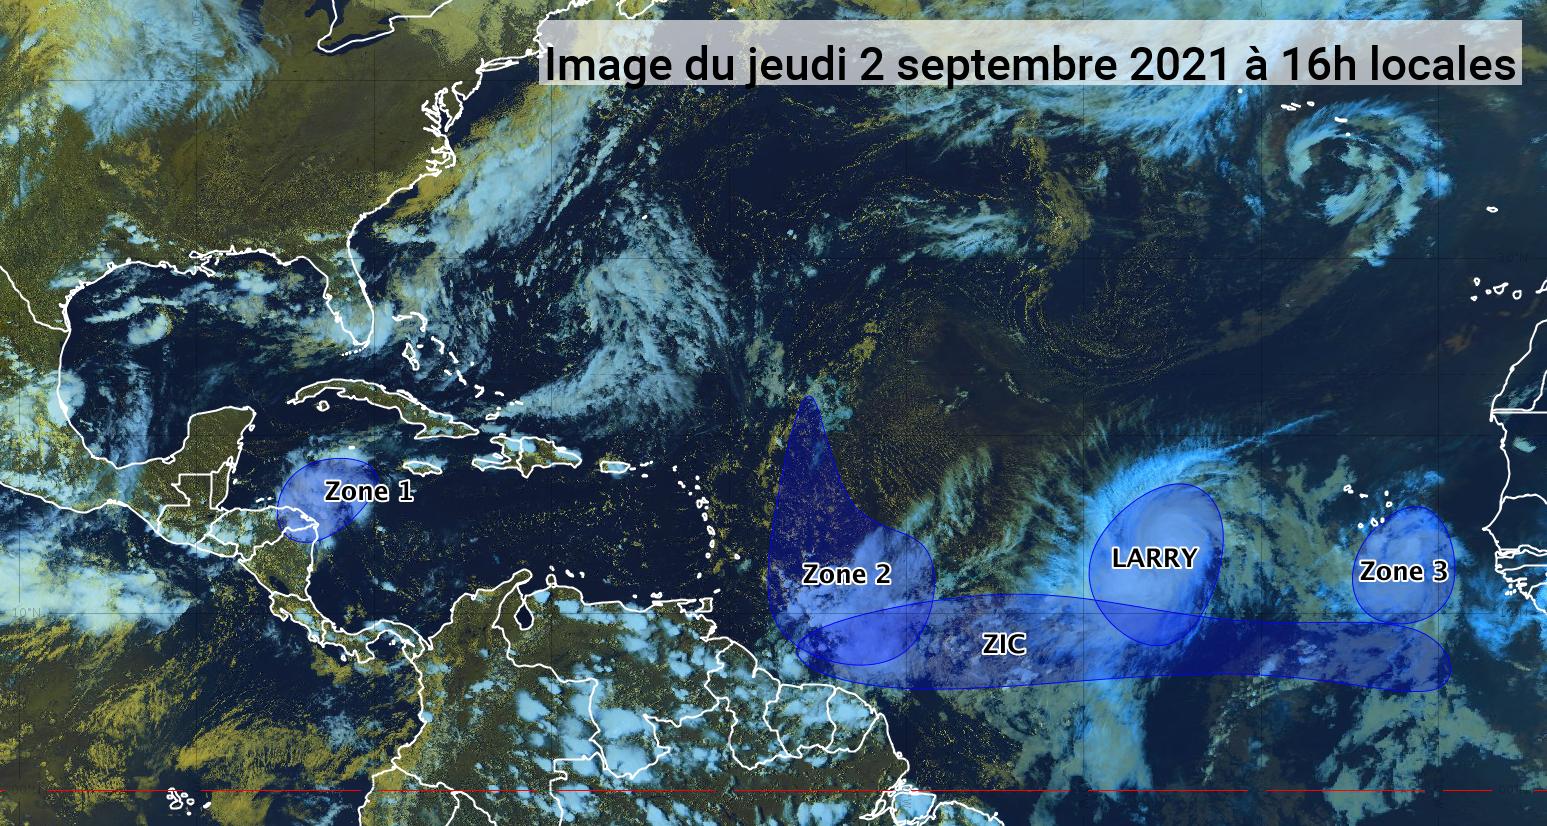     Une onde approche et l'ouragan Larry est au milieu de l'Atlantique (bulletin du 02/09/21)

